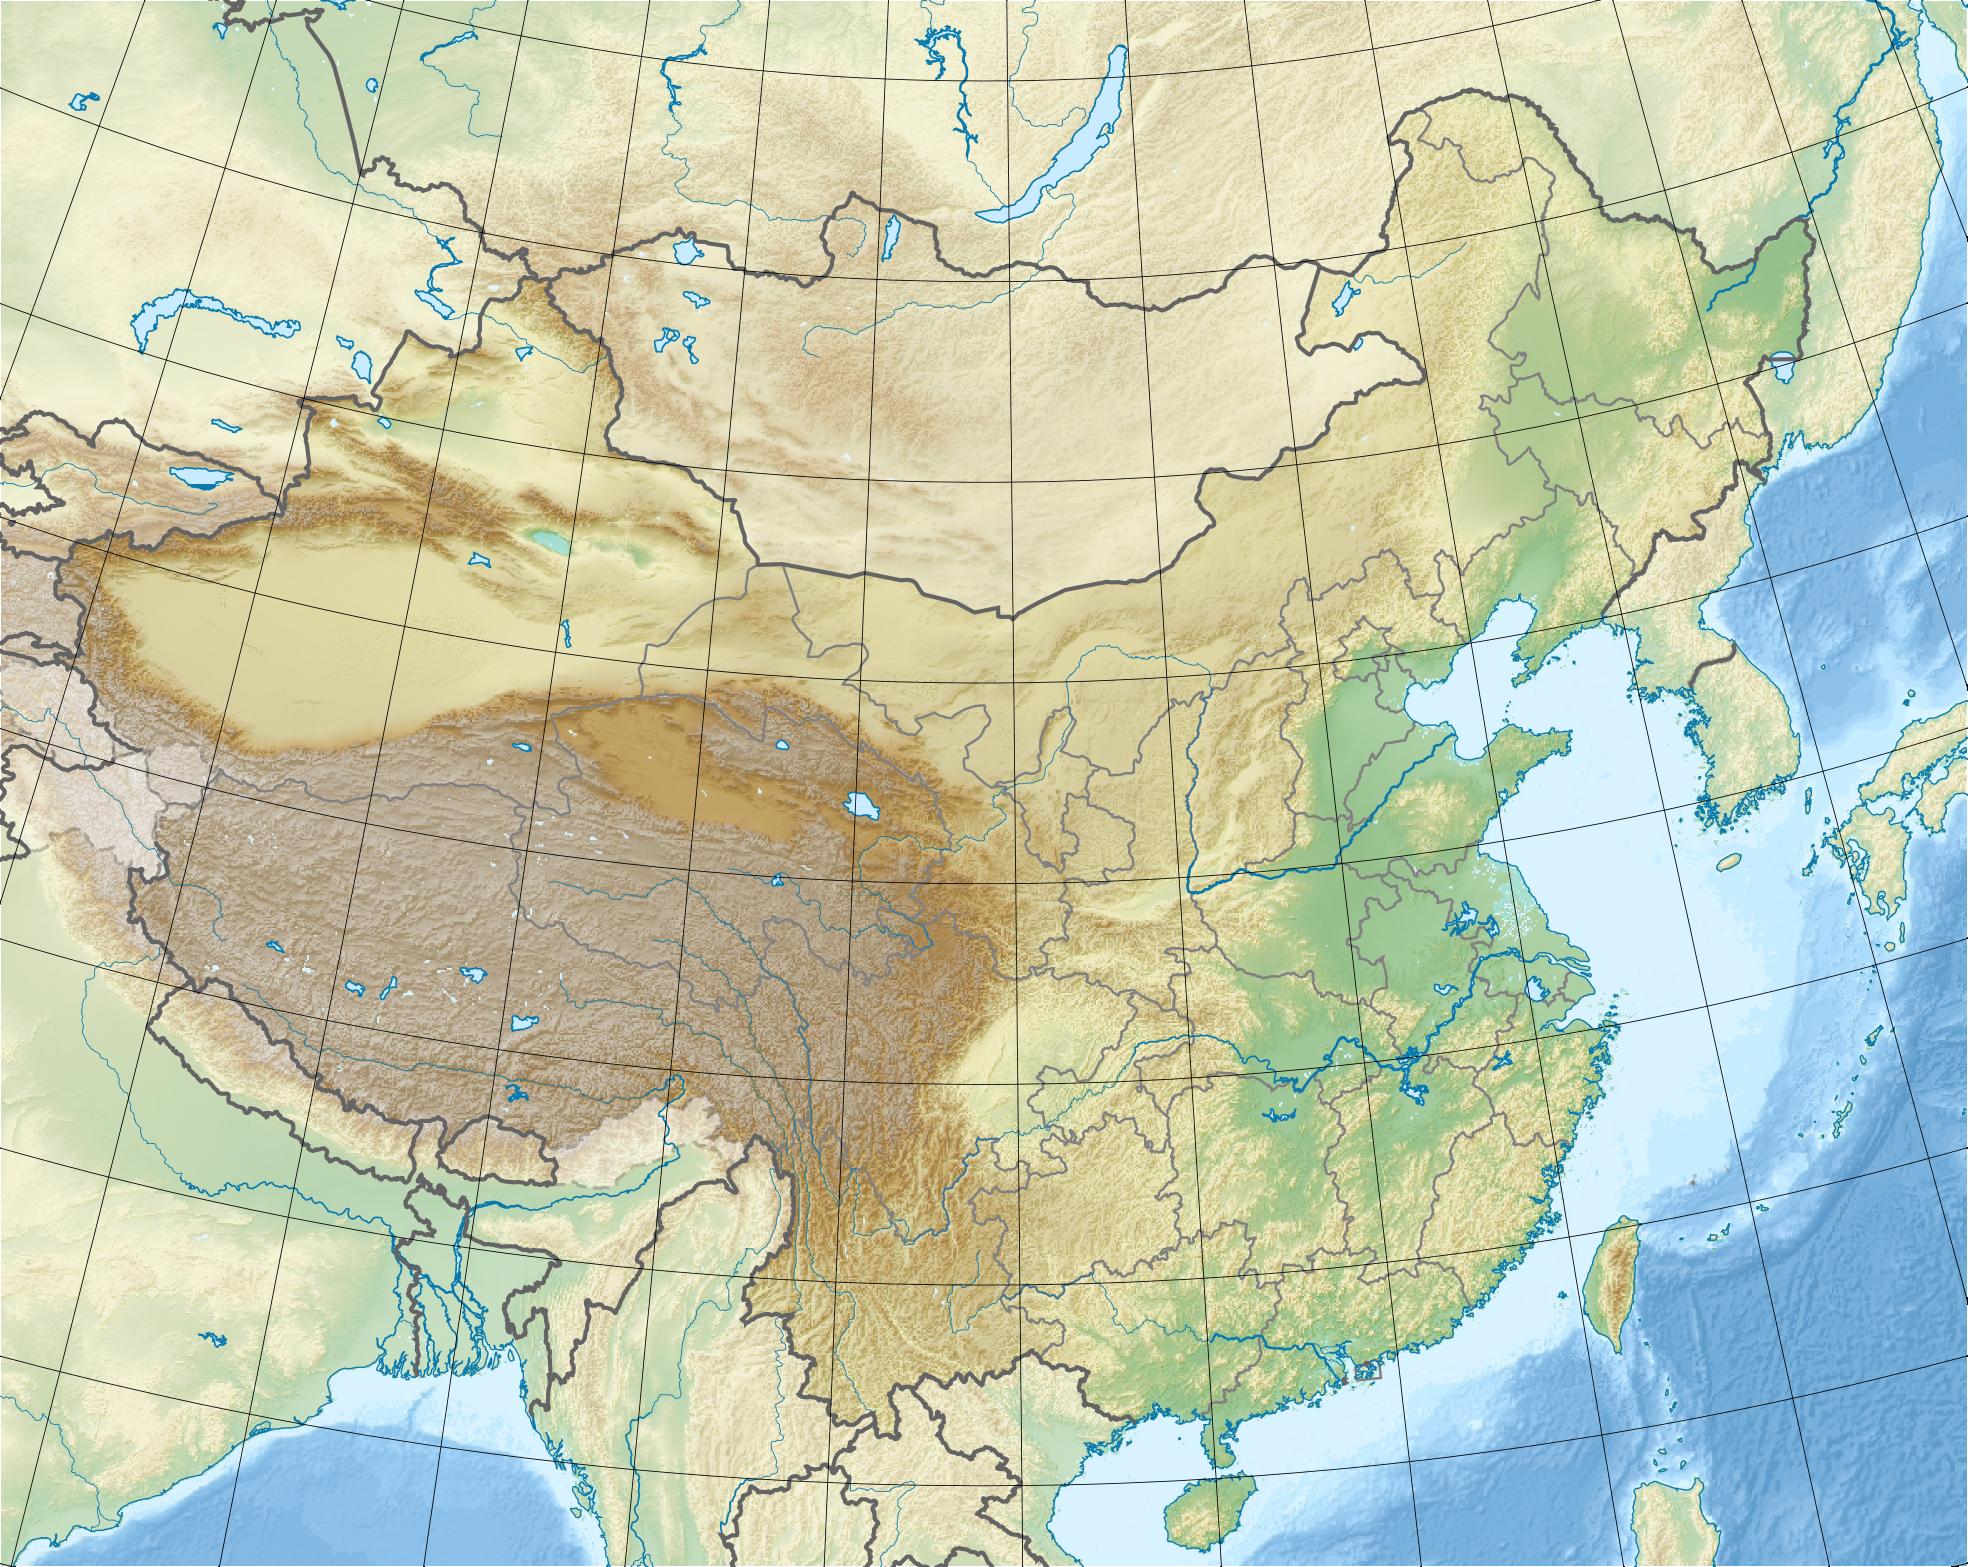 甘肃  宁夏  新疆  青海  西藏  香港  澳门  台湾 上一幅地图: 中国图片